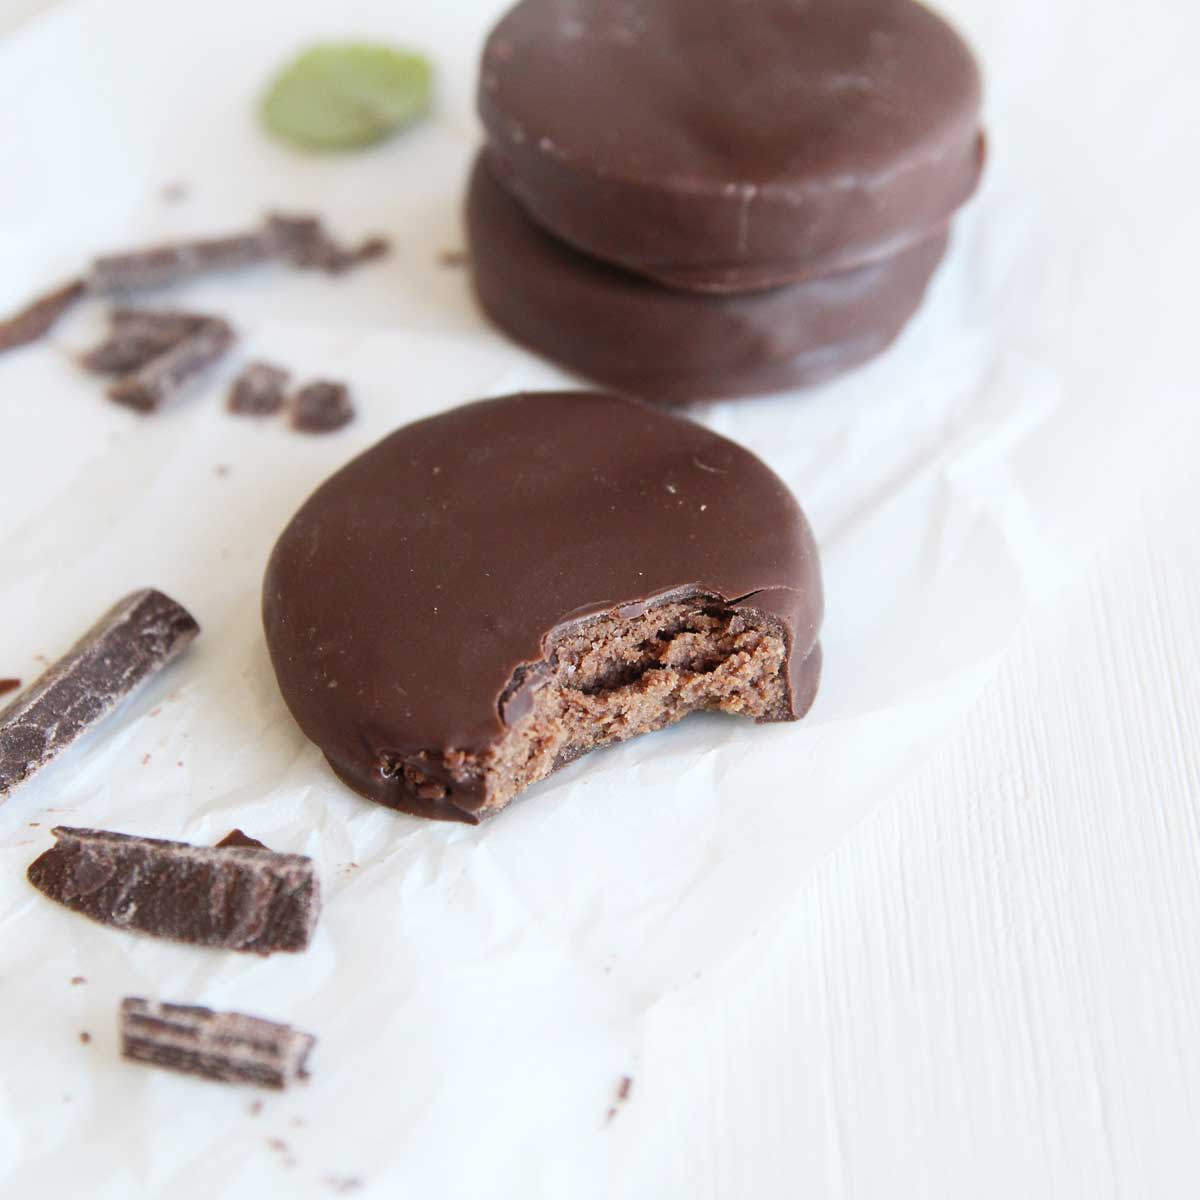 How to Make 3-Ingredient Keto Chocolate Bars (Sugarfree, Vegan) - chocolate bars